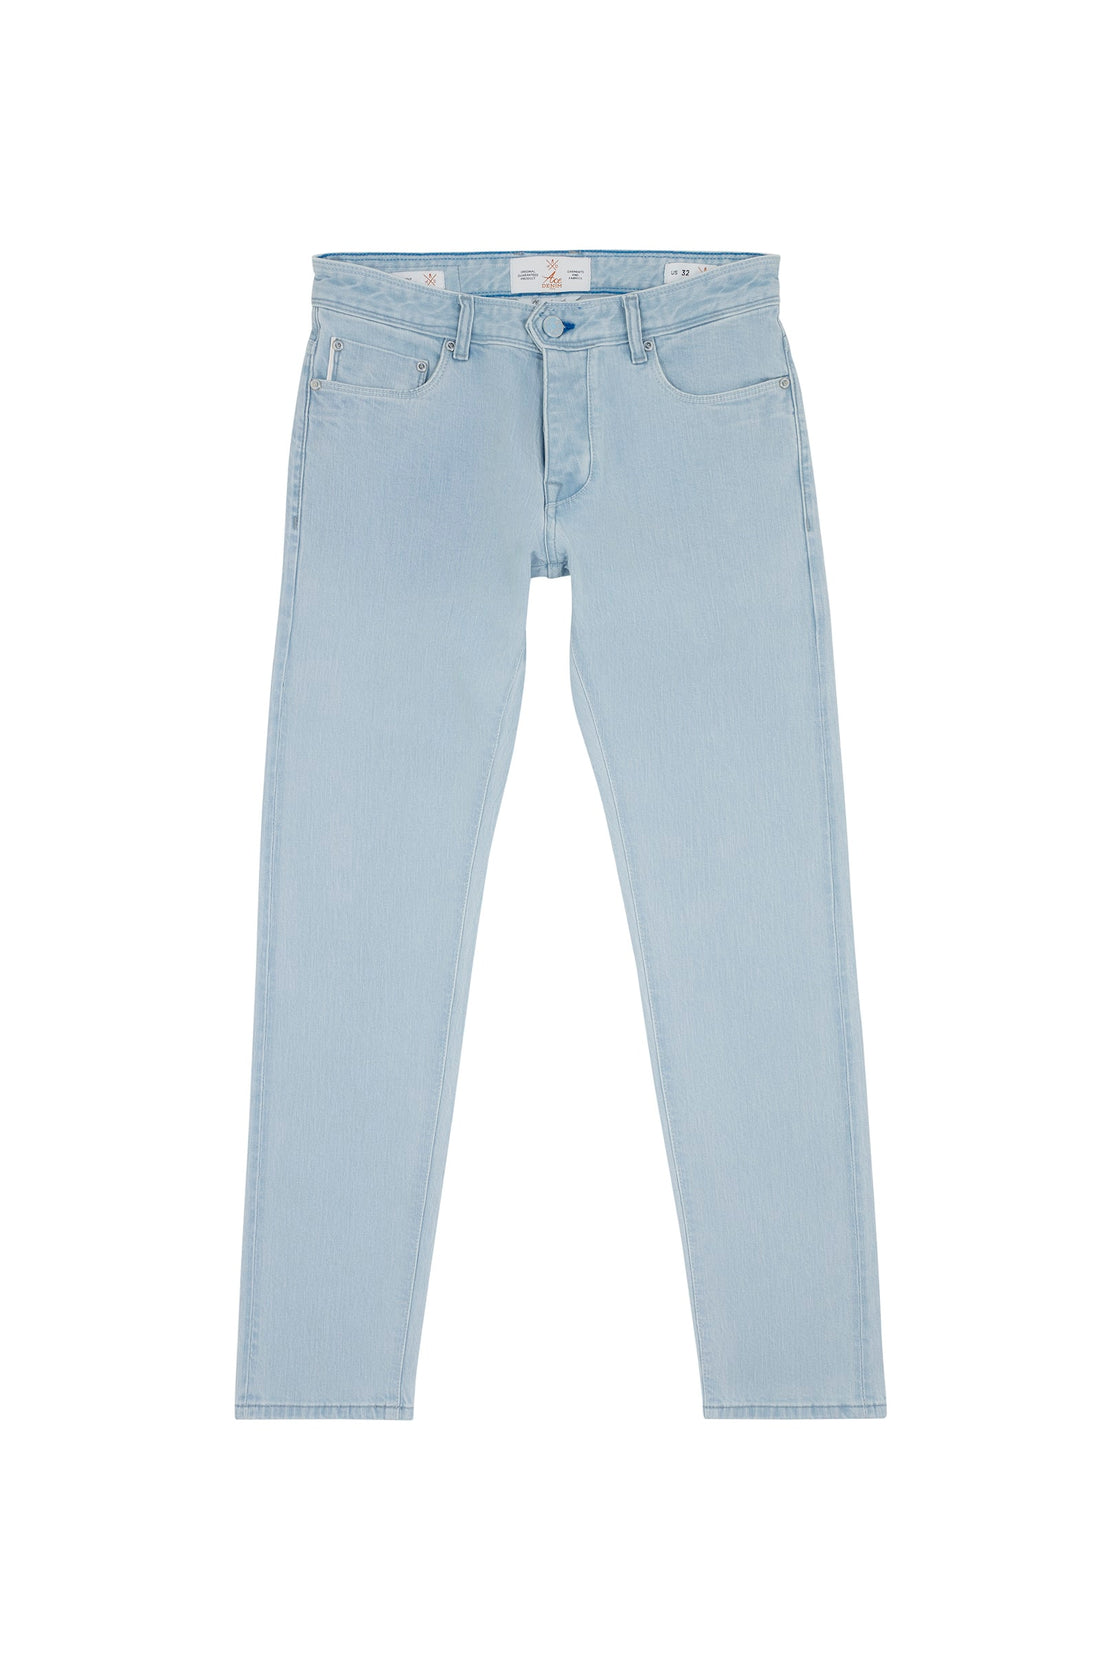 jeans homme coupe slim bleu clair tissue selvedge japonais